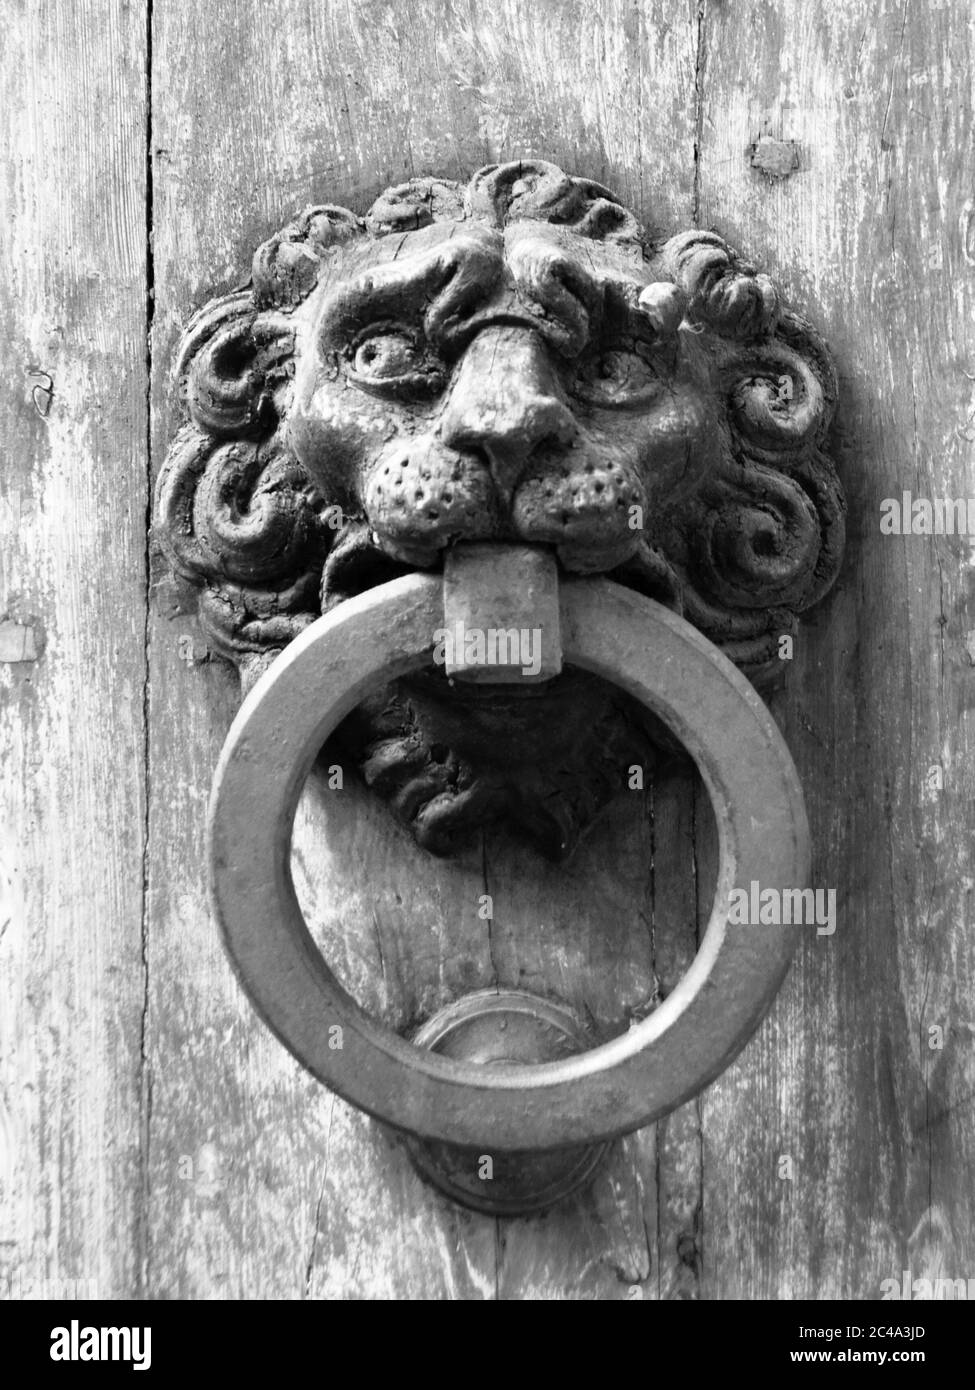 Vintage metal door knocker on old wooden door. Black and white image. Stock Photo